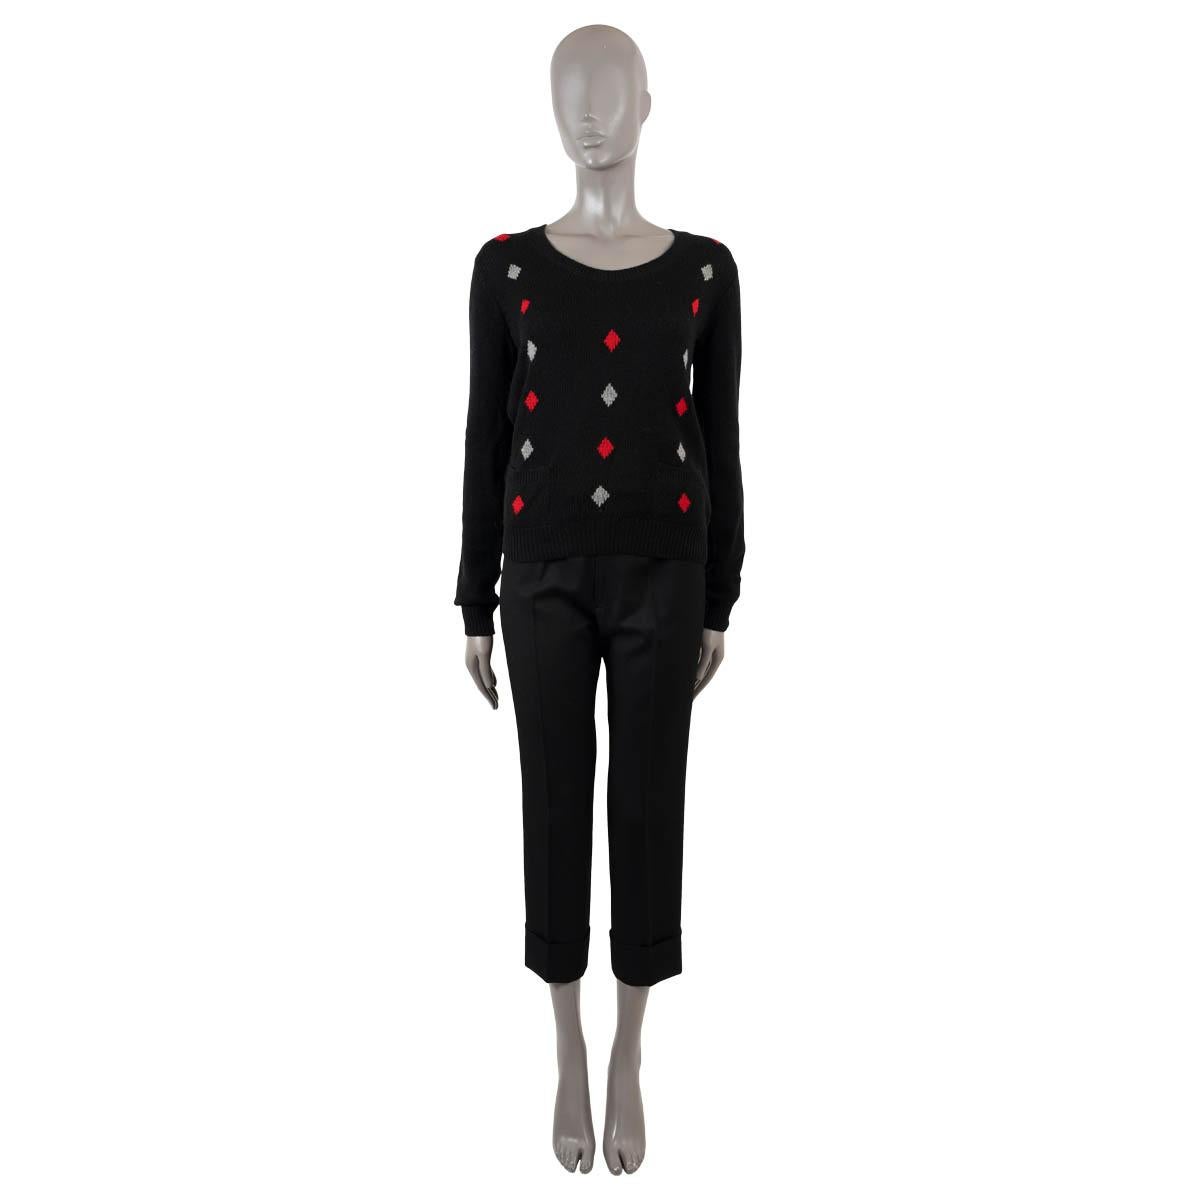 100% authentischer Prada Pullover aus schwarzem Kaschmir (100%) mit Details in Rot und Elfenbein. Mit Rundhalsausschnitt, zwei Taschen in der Taille und Rippstrickbündchen an Ärmeln und Saum. Unbeschriftet. Wurde getragen und ist in ausgezeichnetem